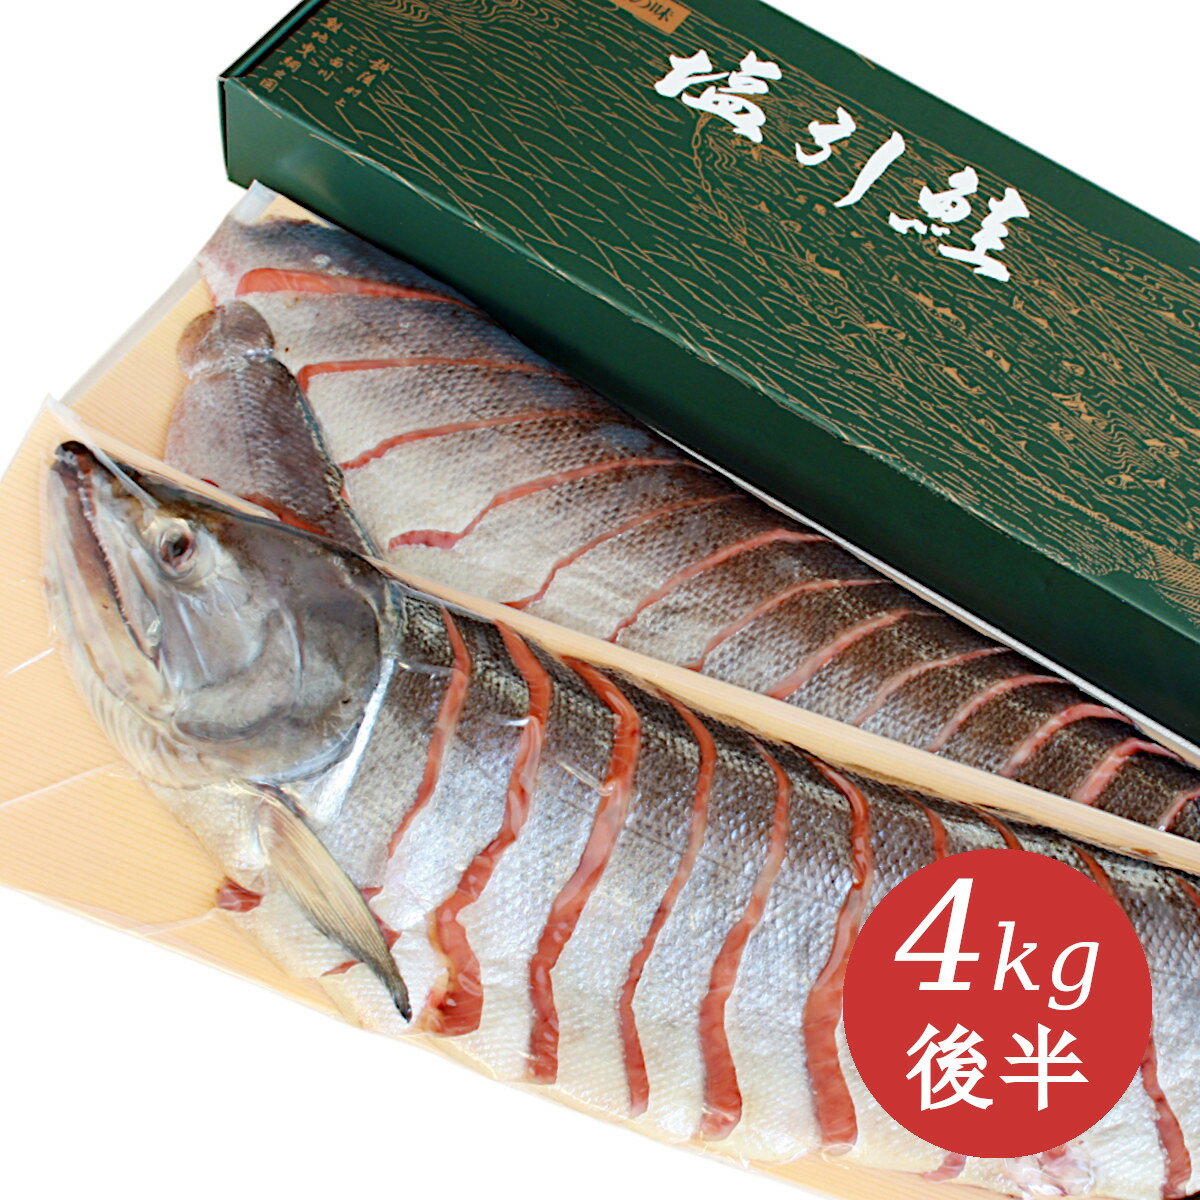 新潟 村上 名産 塩引き鮭 塩引鮭 切身姿造り 漁獲時4kg後半の鮭を使用